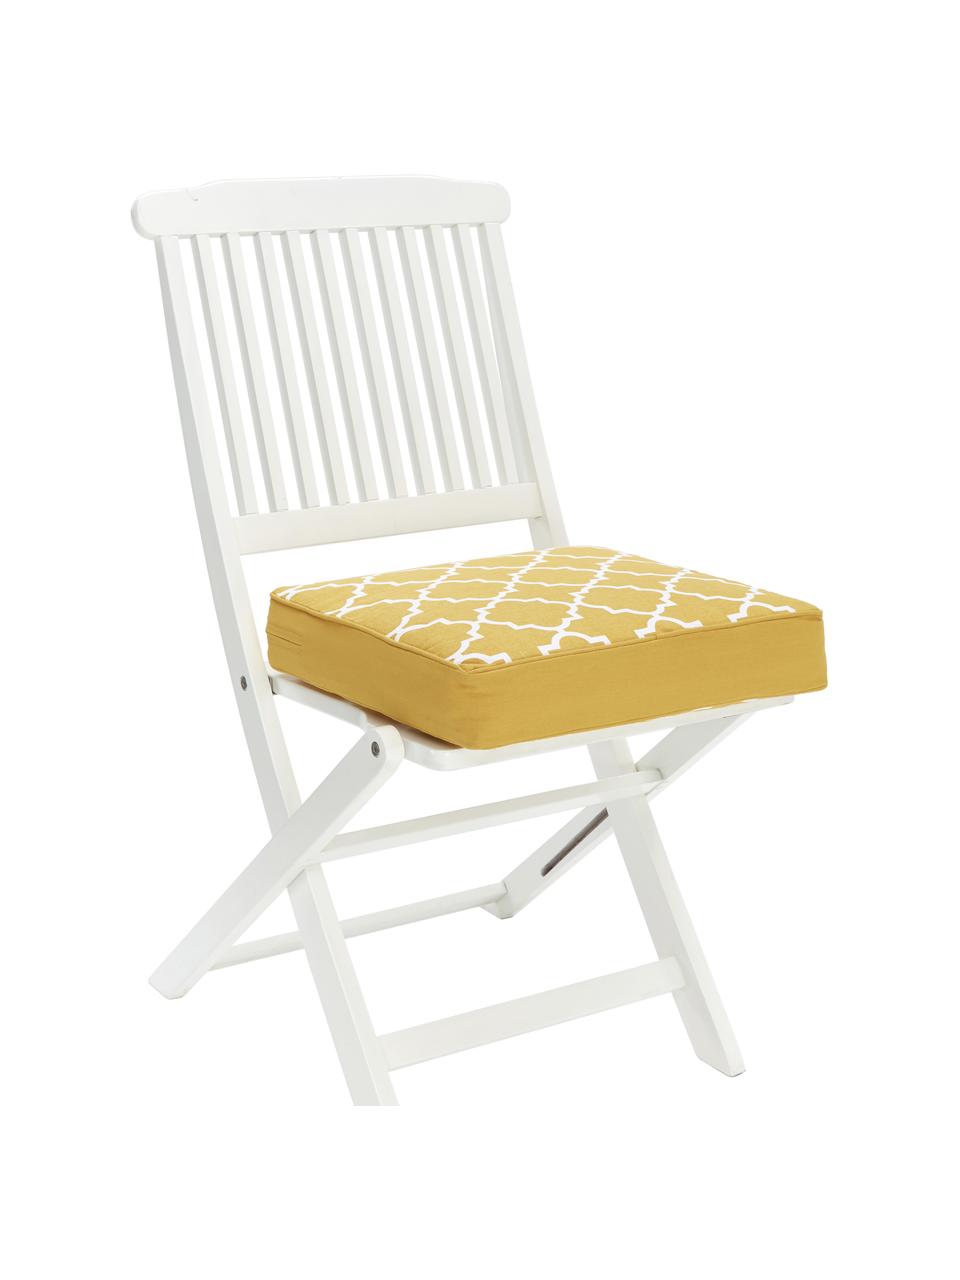 Cojín de asiento alto Lana, Funda: 100% algodón, Amarillo, An 40 x L 40 cm